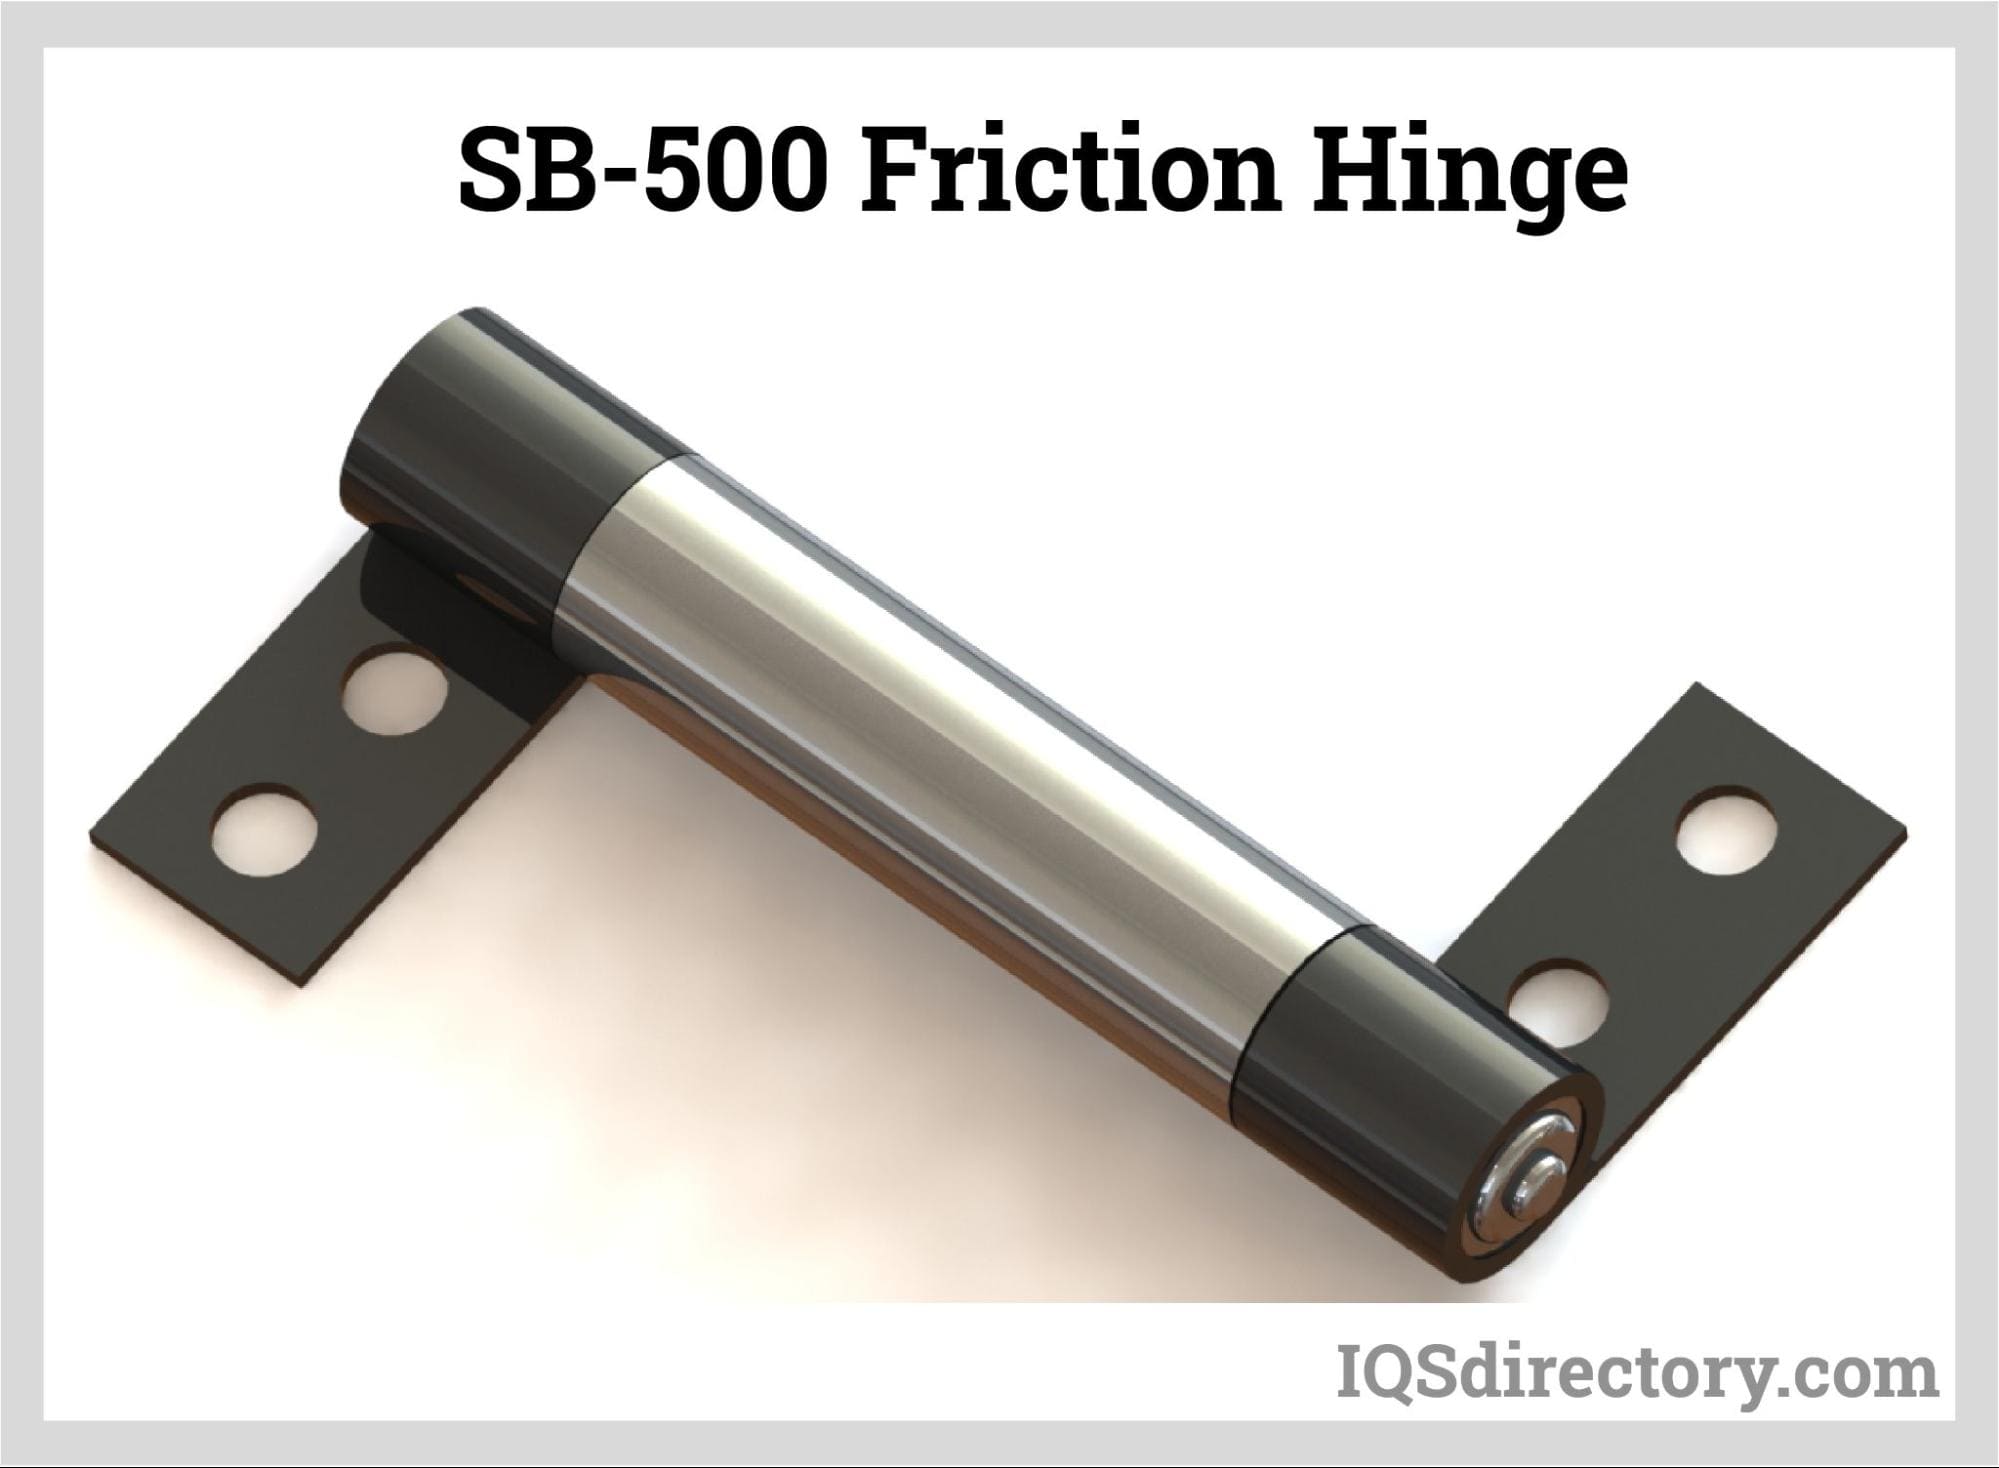  SB-500 Friction Hinge